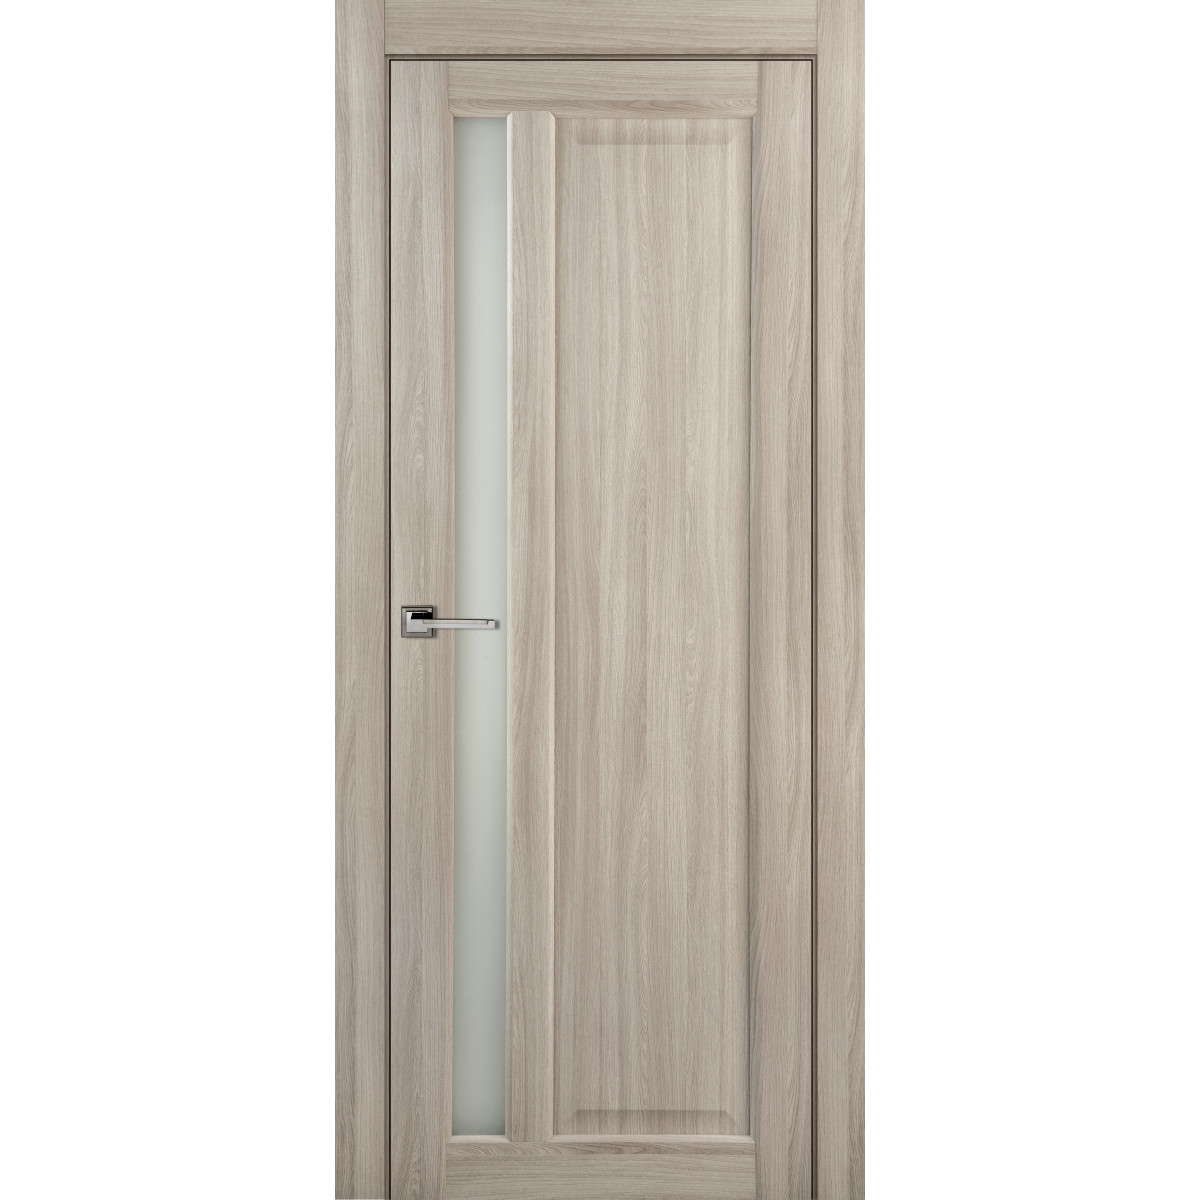 Дверь межкомнатная остеклённая Artens Мария 90x200 см, ПВХ, цвет шимо